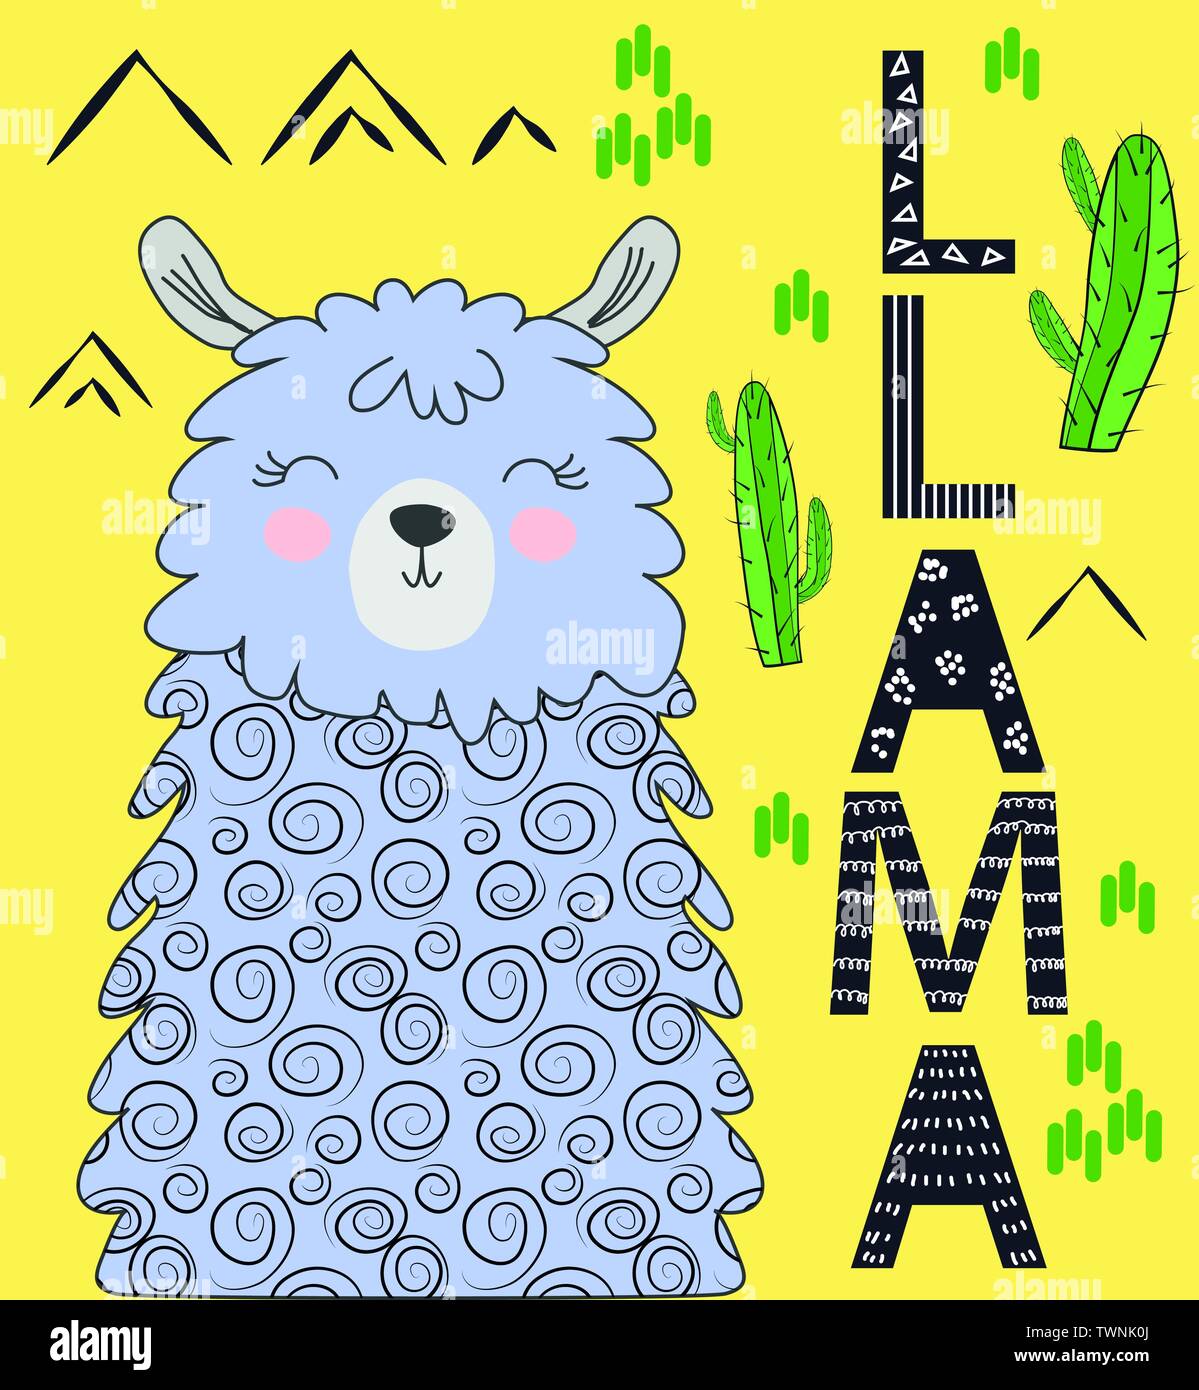 Cartoon carino llama alpaca vector graphic design set. Disegnata a mano llama carattere illustrativo e elementi di cactus Illustrazione Vettoriale